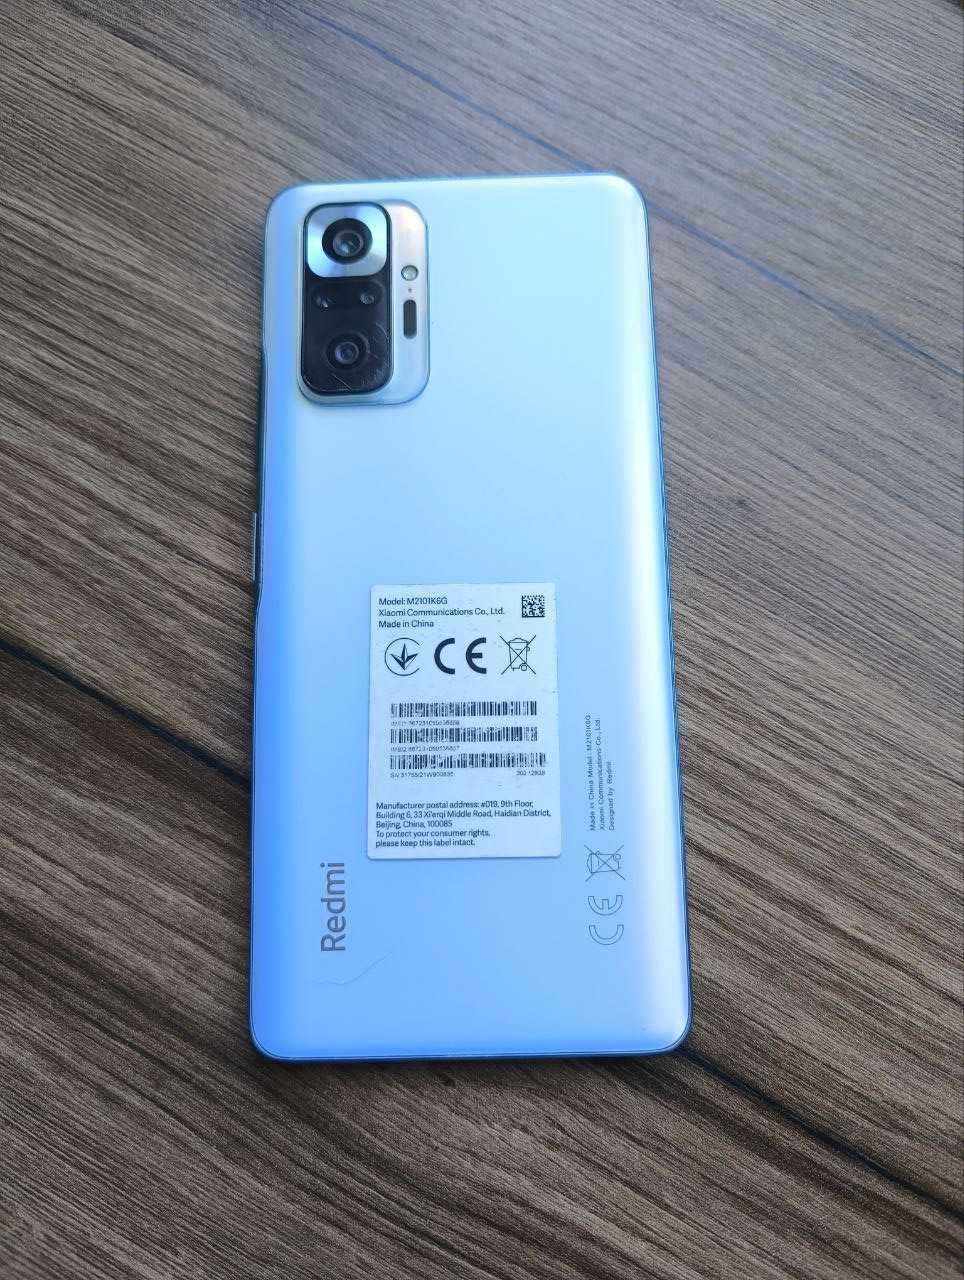 Xiaomi Redmi note 10 pro